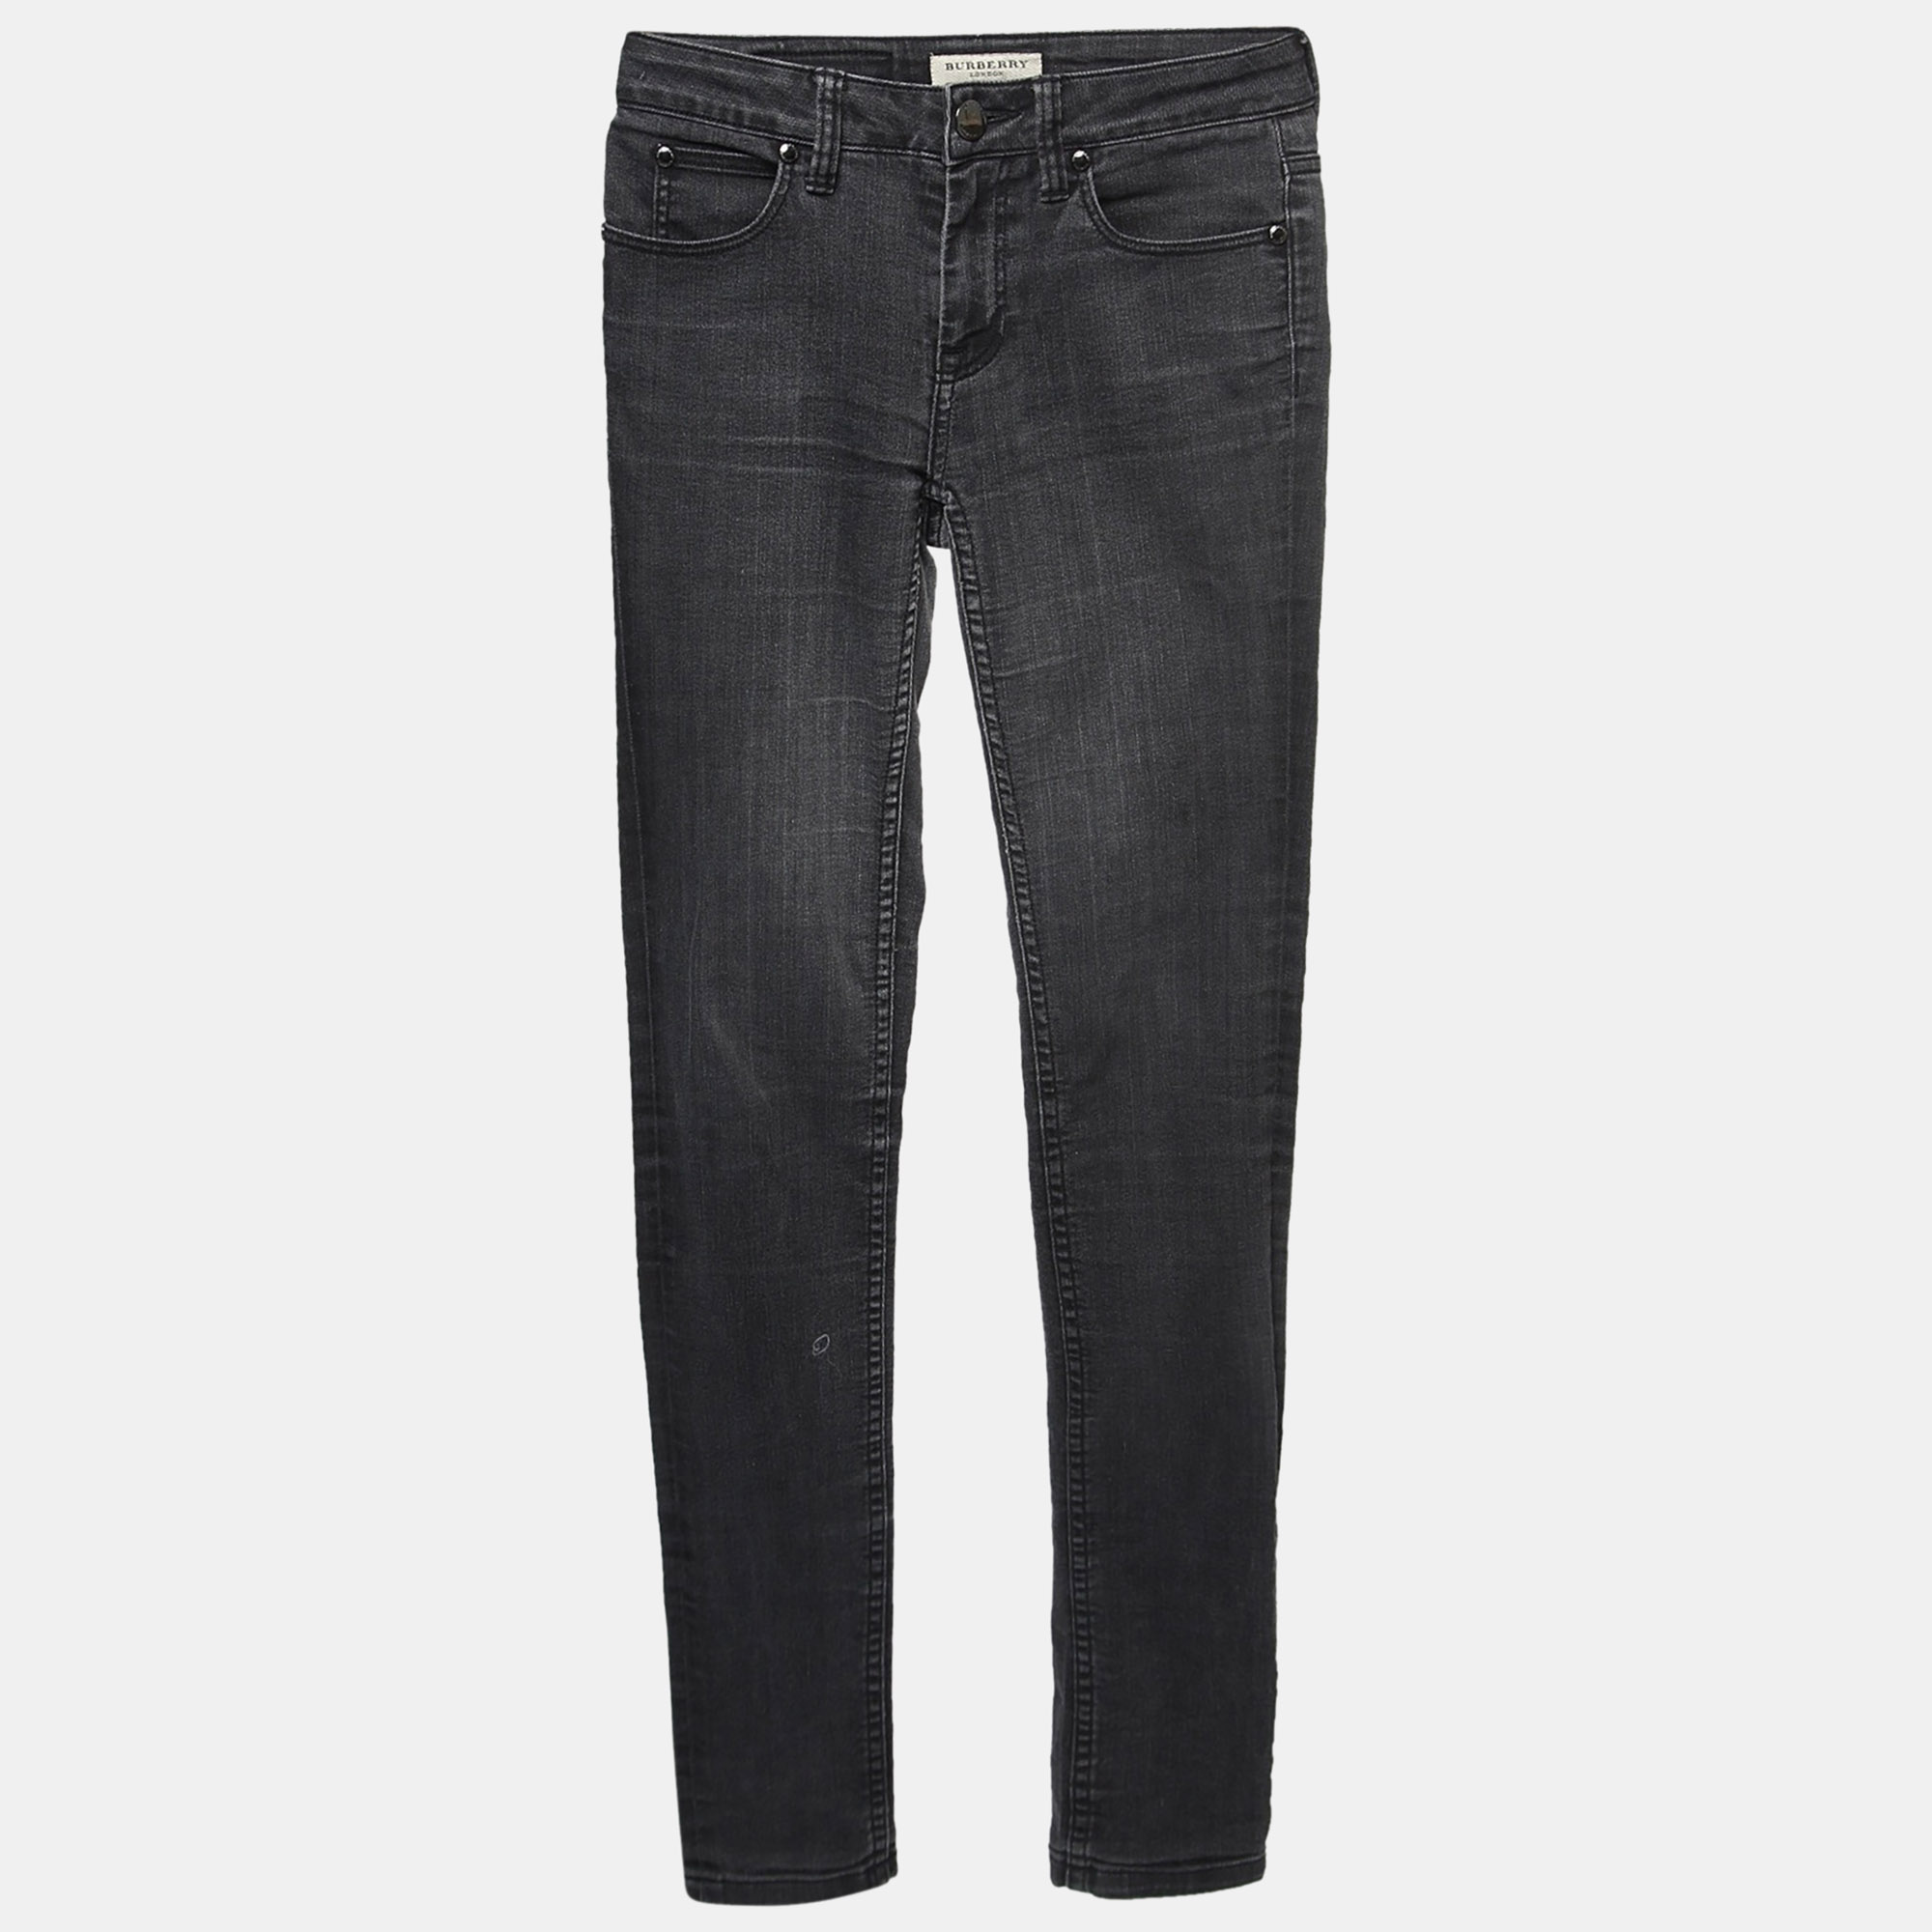 

Burberry London Charcoal Grey Denim Skinny Jeans S Waist 25"